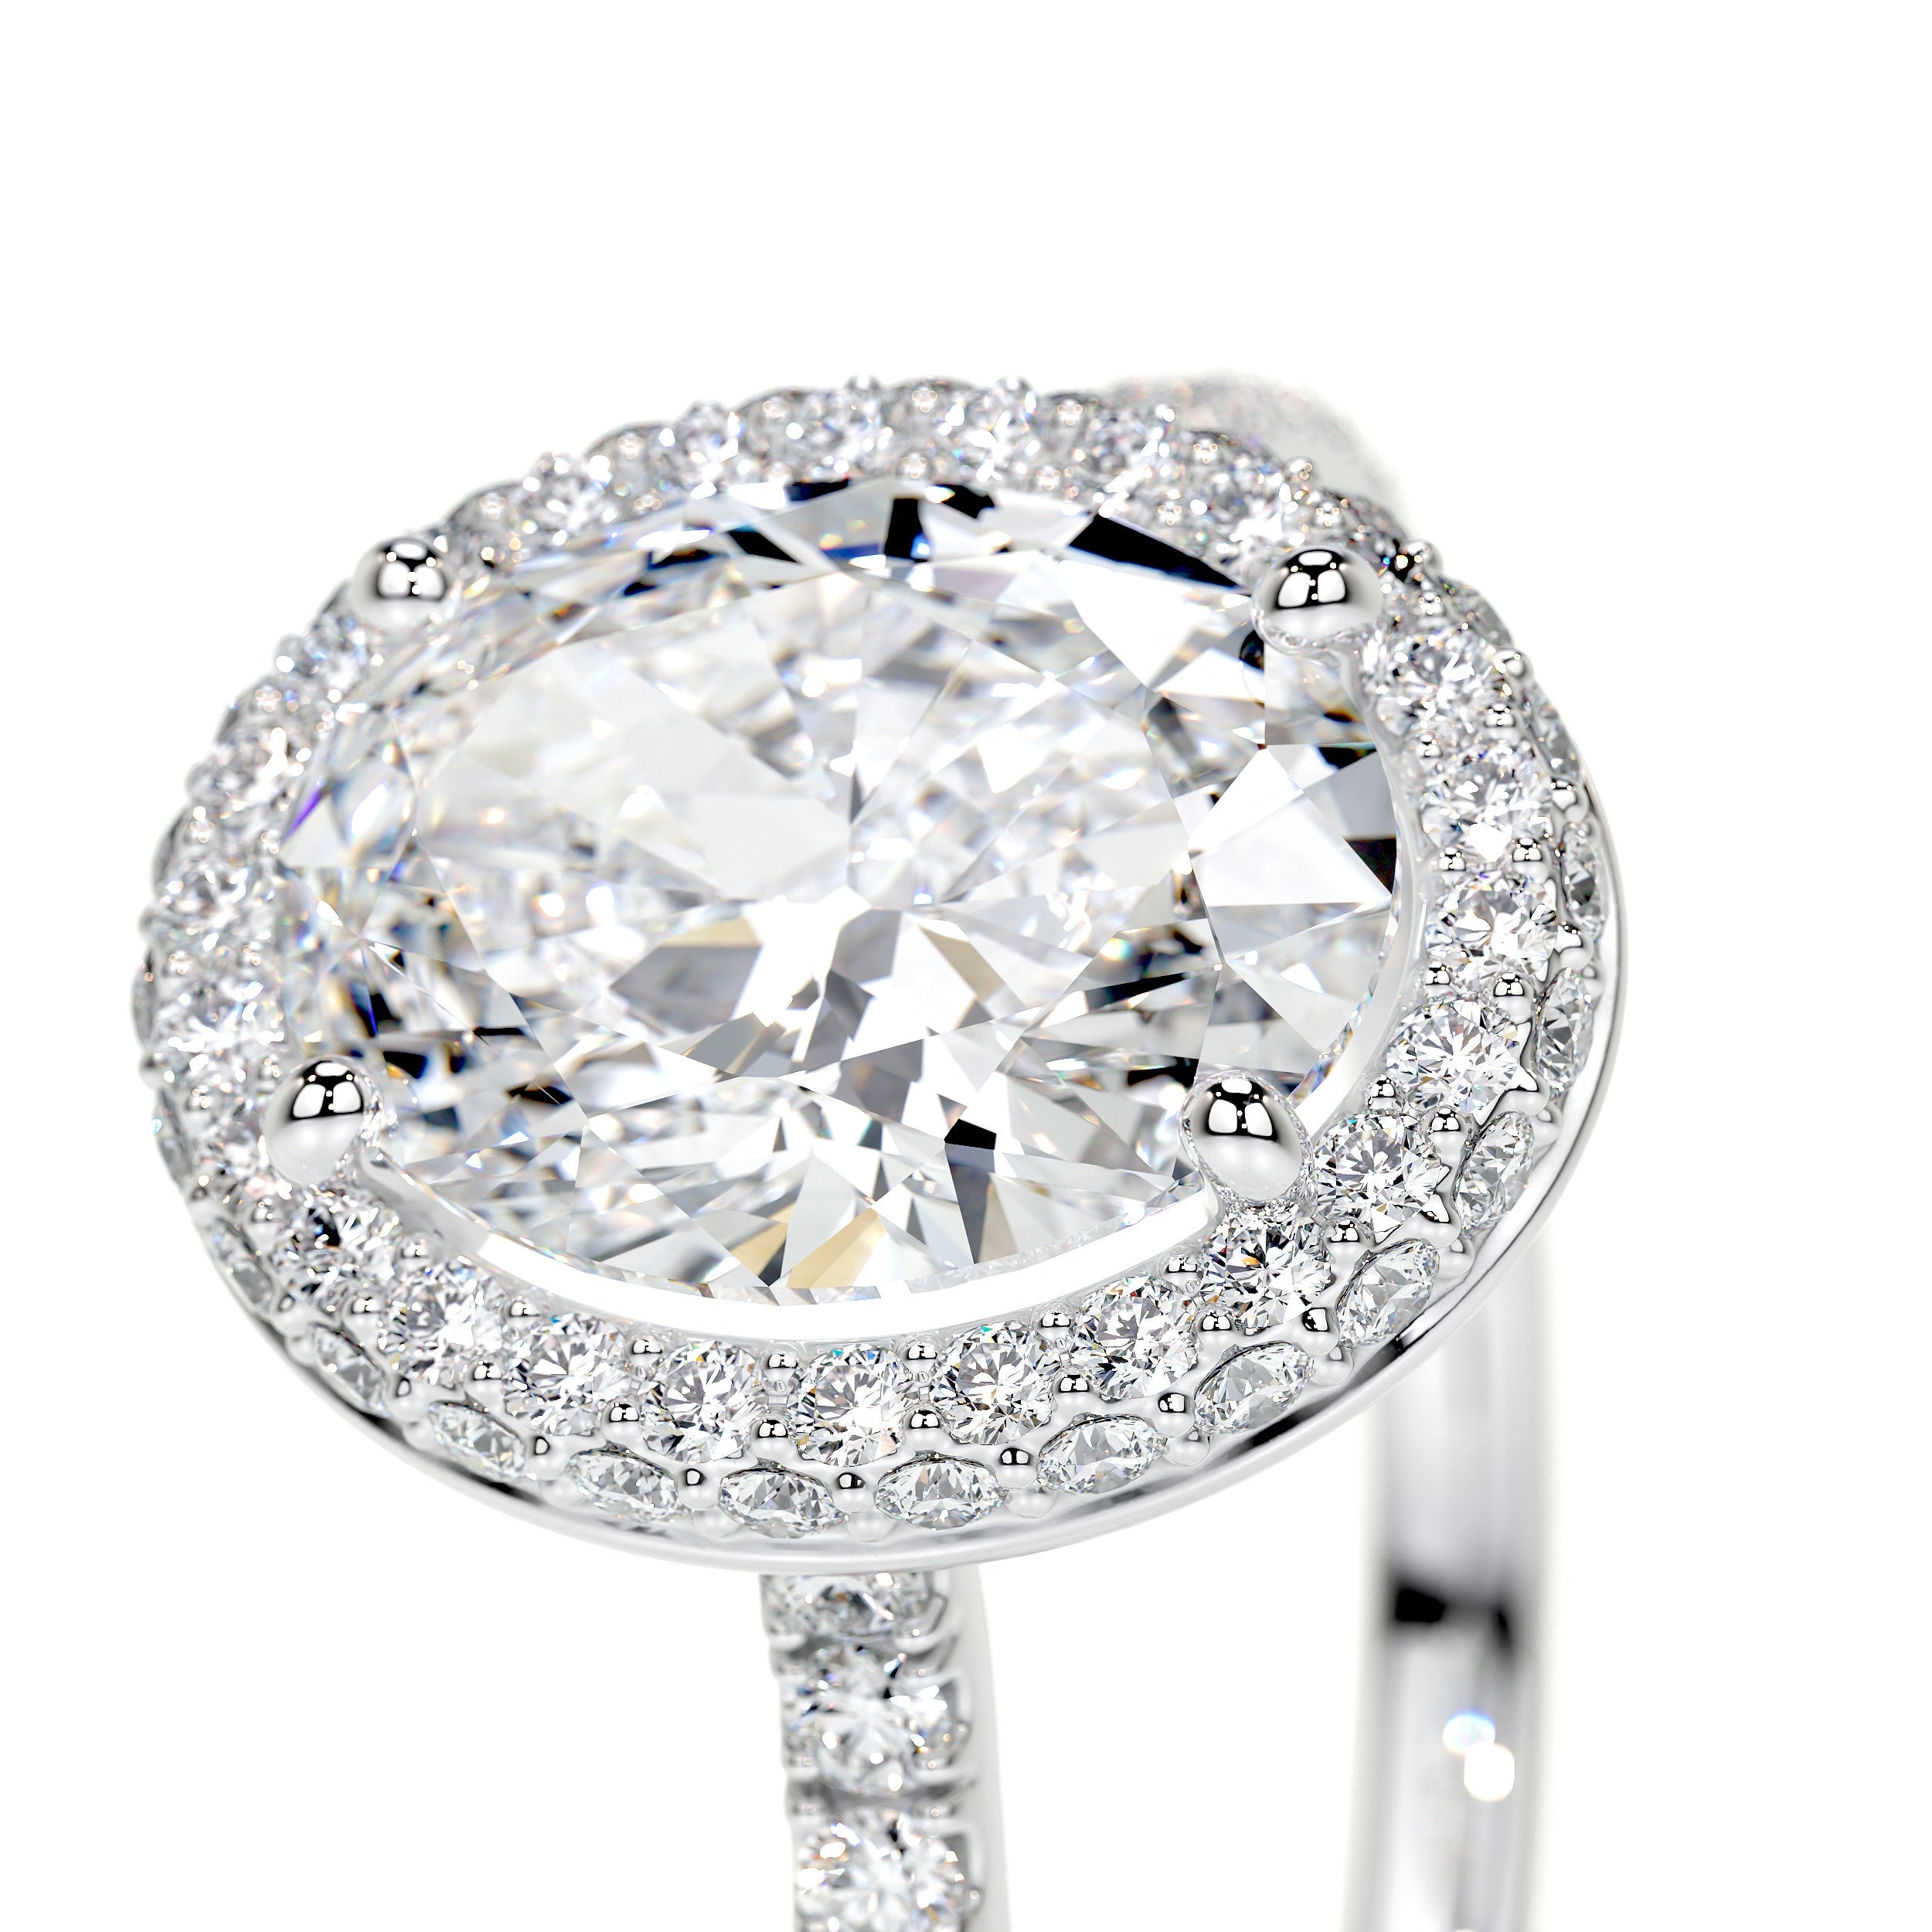 Parker Lab Grown Diamond Ring   (2.40 Carat) -14K White Gold